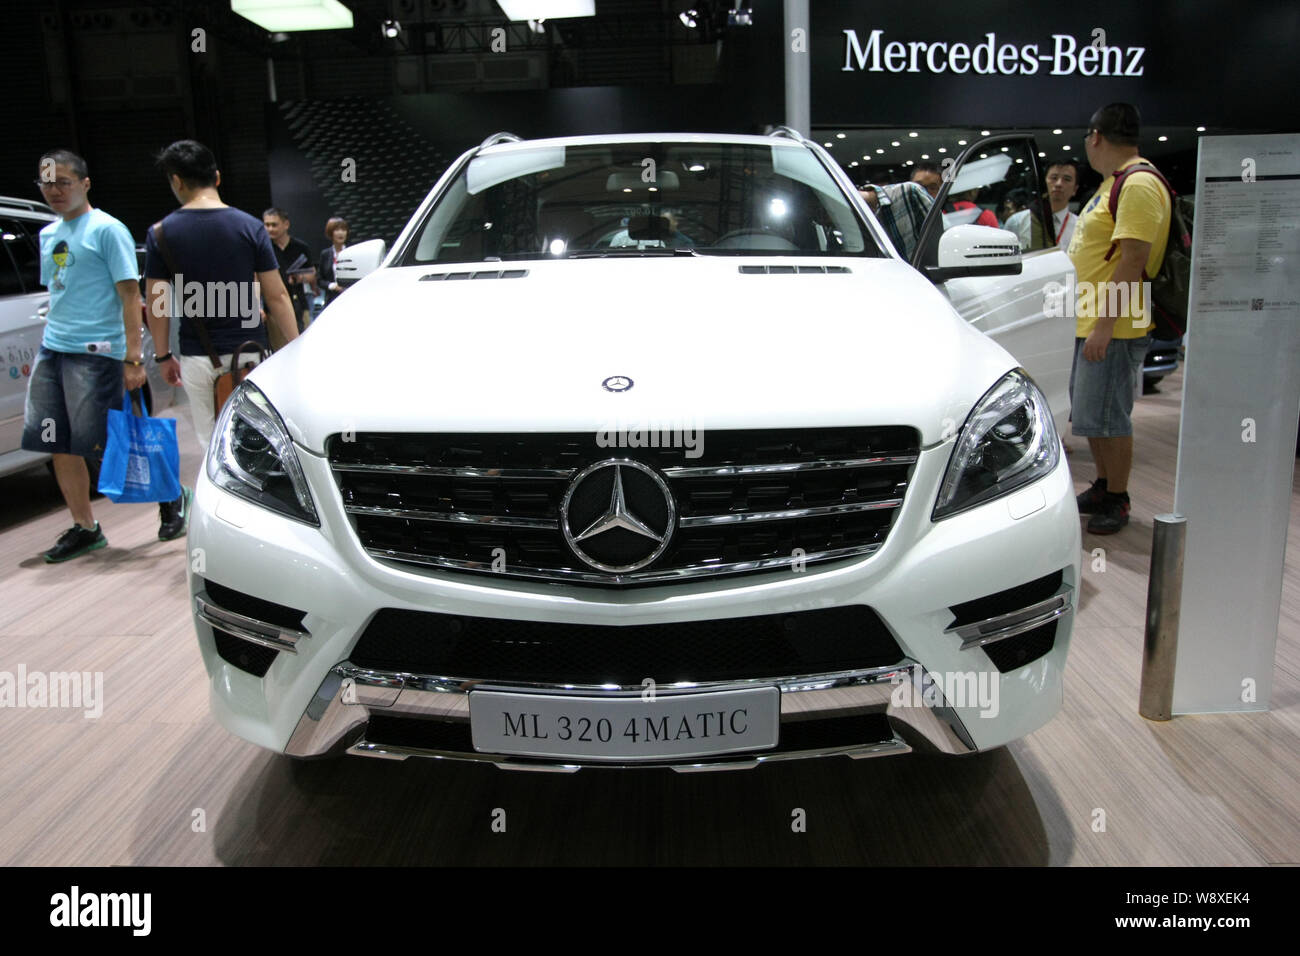 ---- Besucher vorbei an einem Mercedes-Benz ML 320 4MATIC im Jahr 2014 Pudong Internationalen Automobil- Ausstellung in Shanghai, China, 18. August 2014 Stockfoto